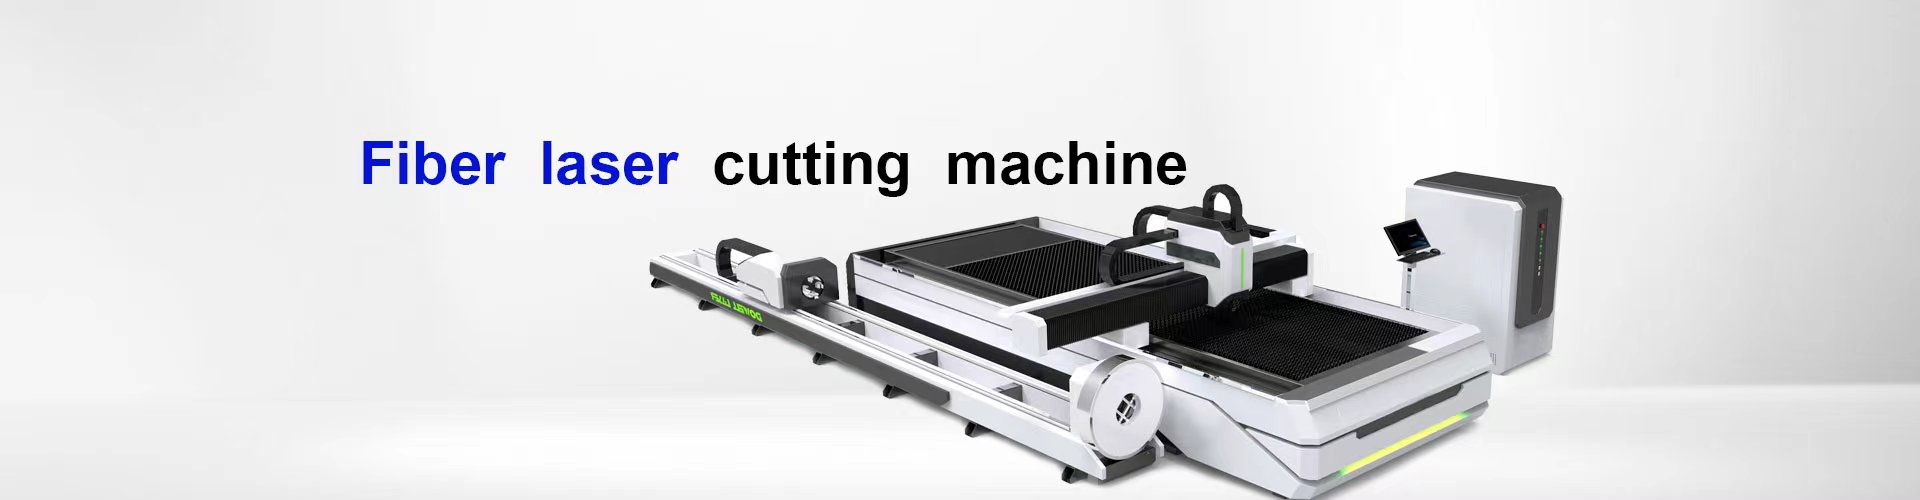 Fiber laser cutting machine 